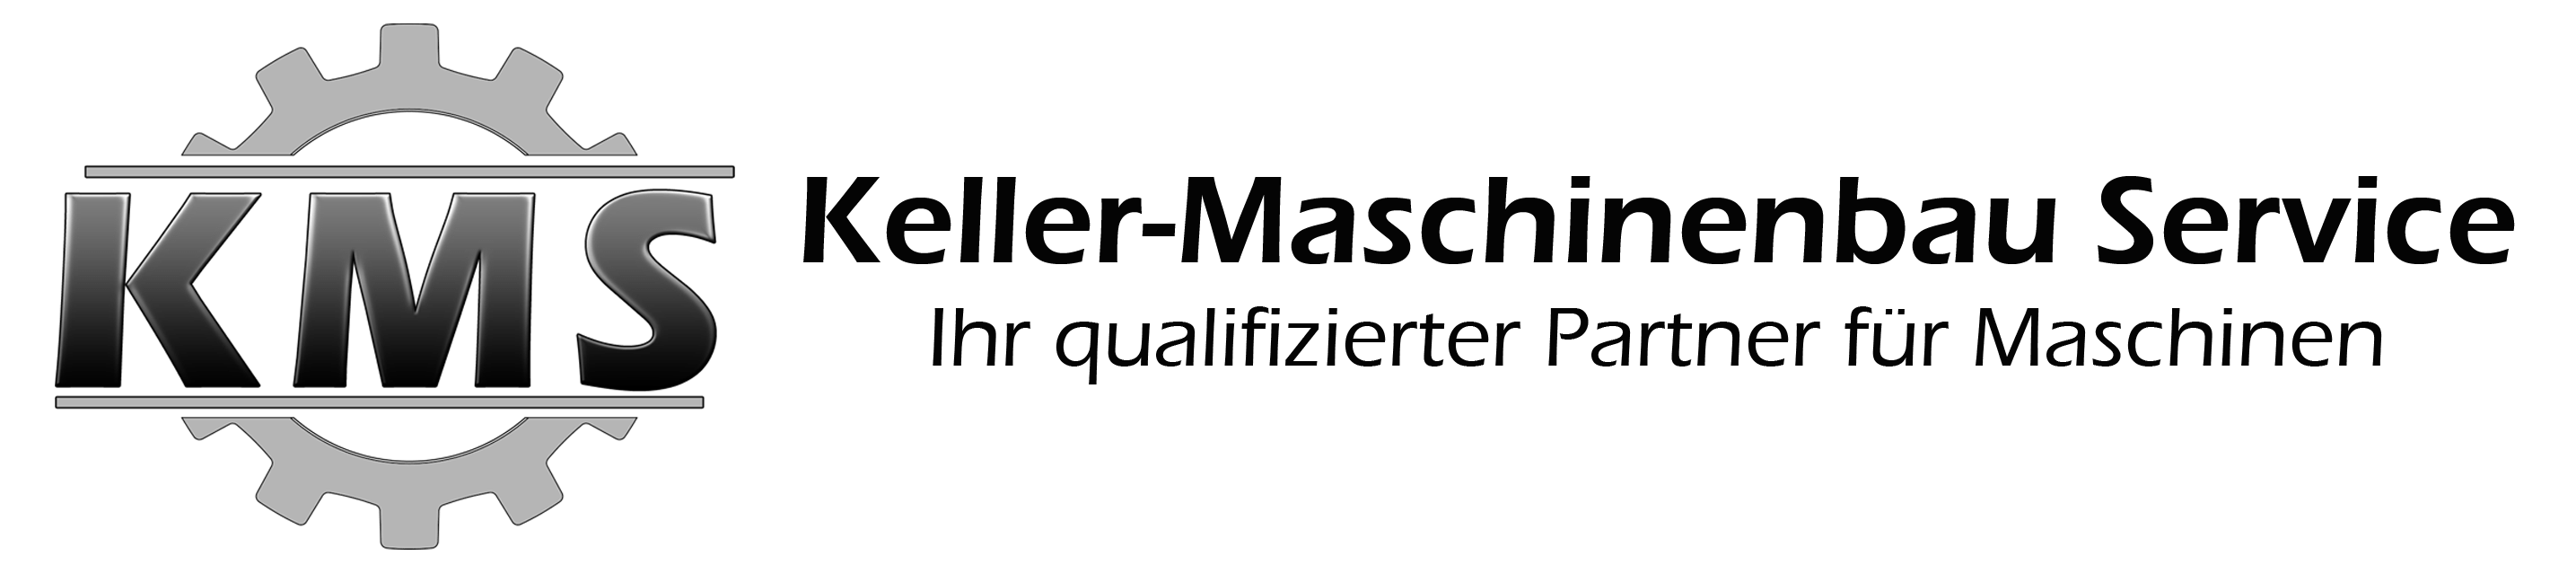 Keller Maschinenbau Service Logo mit Schrift